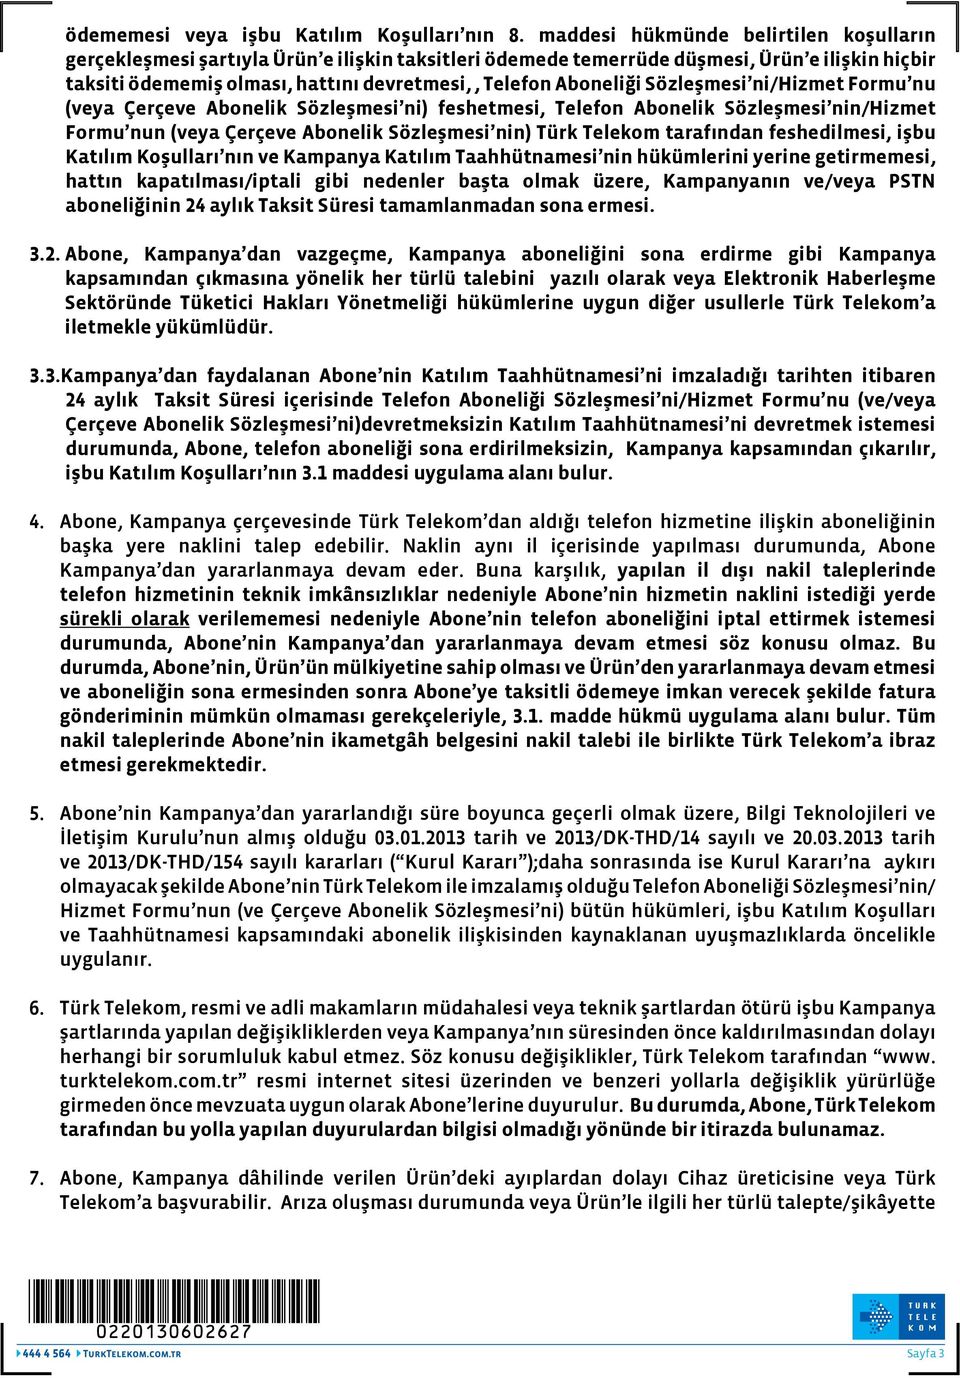 Aboneliği Sözleşmesi ni/hizmet Formu nu (veya Çerçeve Abonelik Sözleşmesi ni) feshetmesi, Telefon Abonelik Sözleşmesi nin/hizmet Formu nun (veya Çerçeve Abonelik Sözleşmesi nin) Türk Telekom